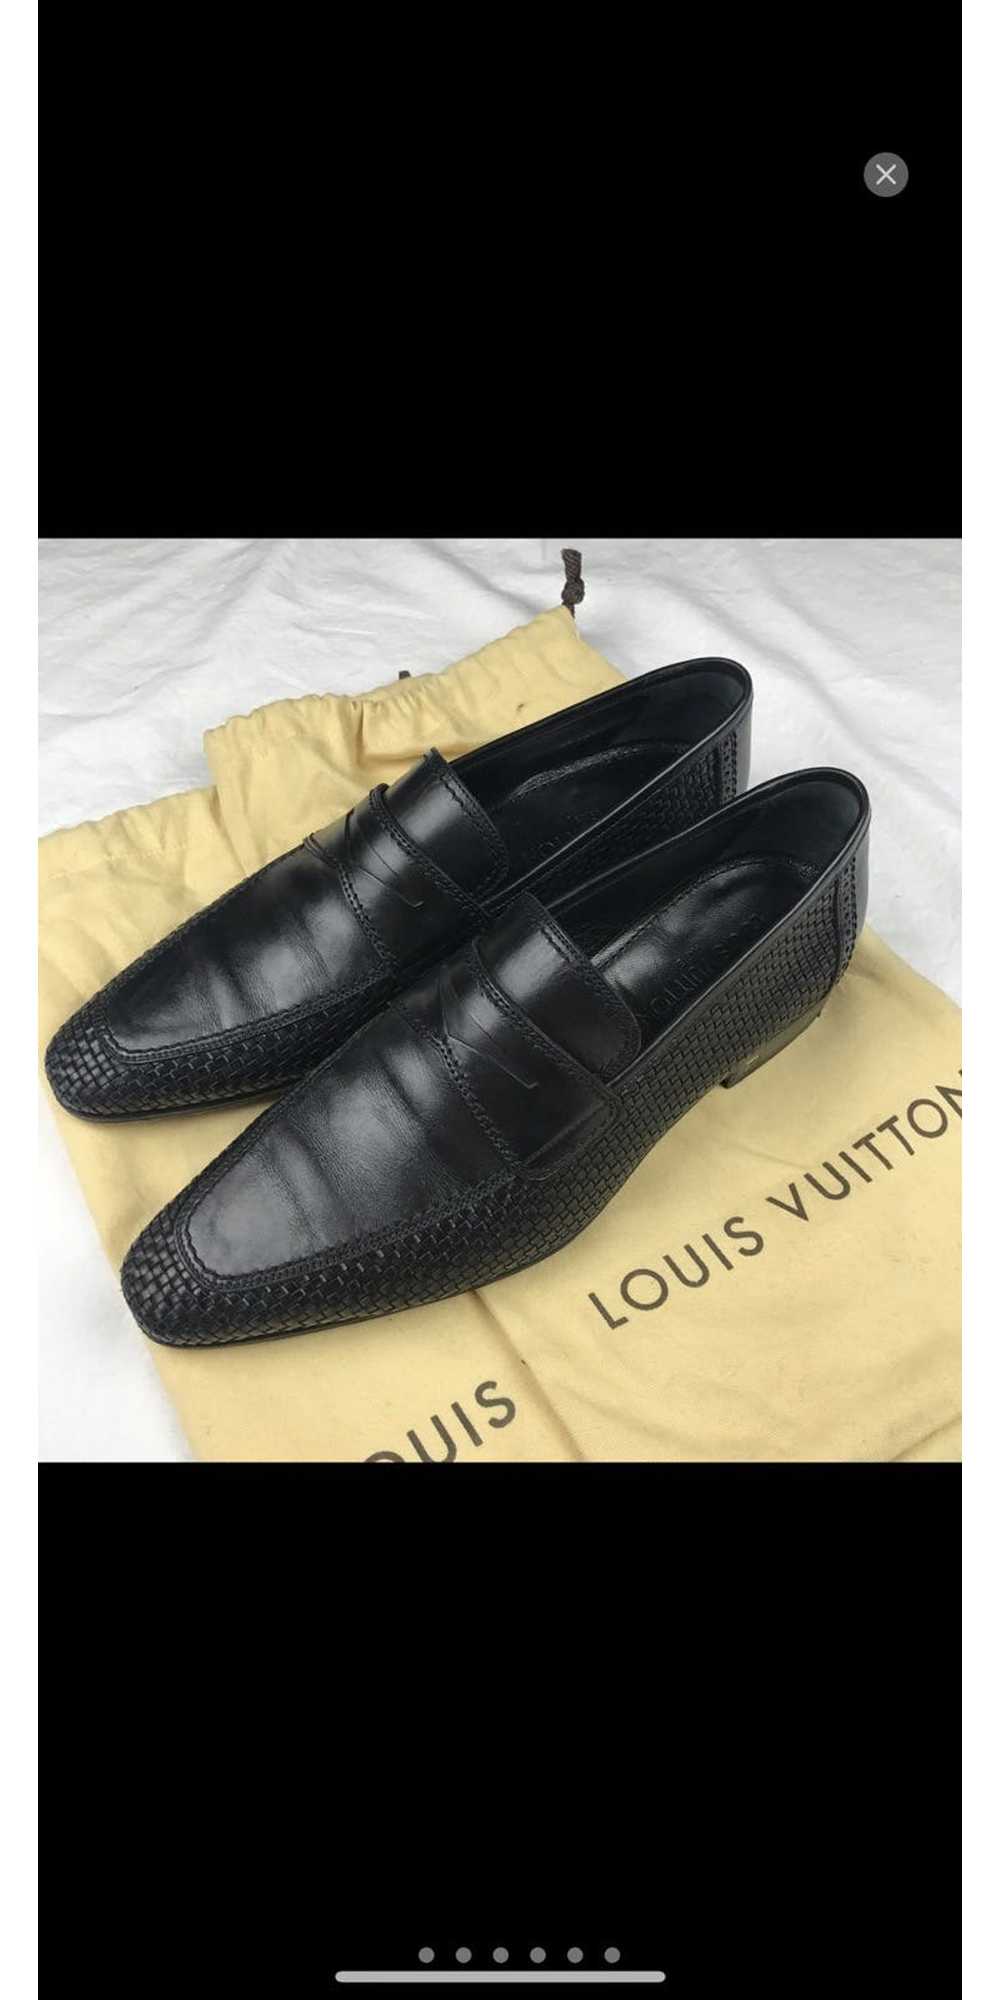 *NEW* Vintage Louis Vuitton Mens Dress Shoes Size 7